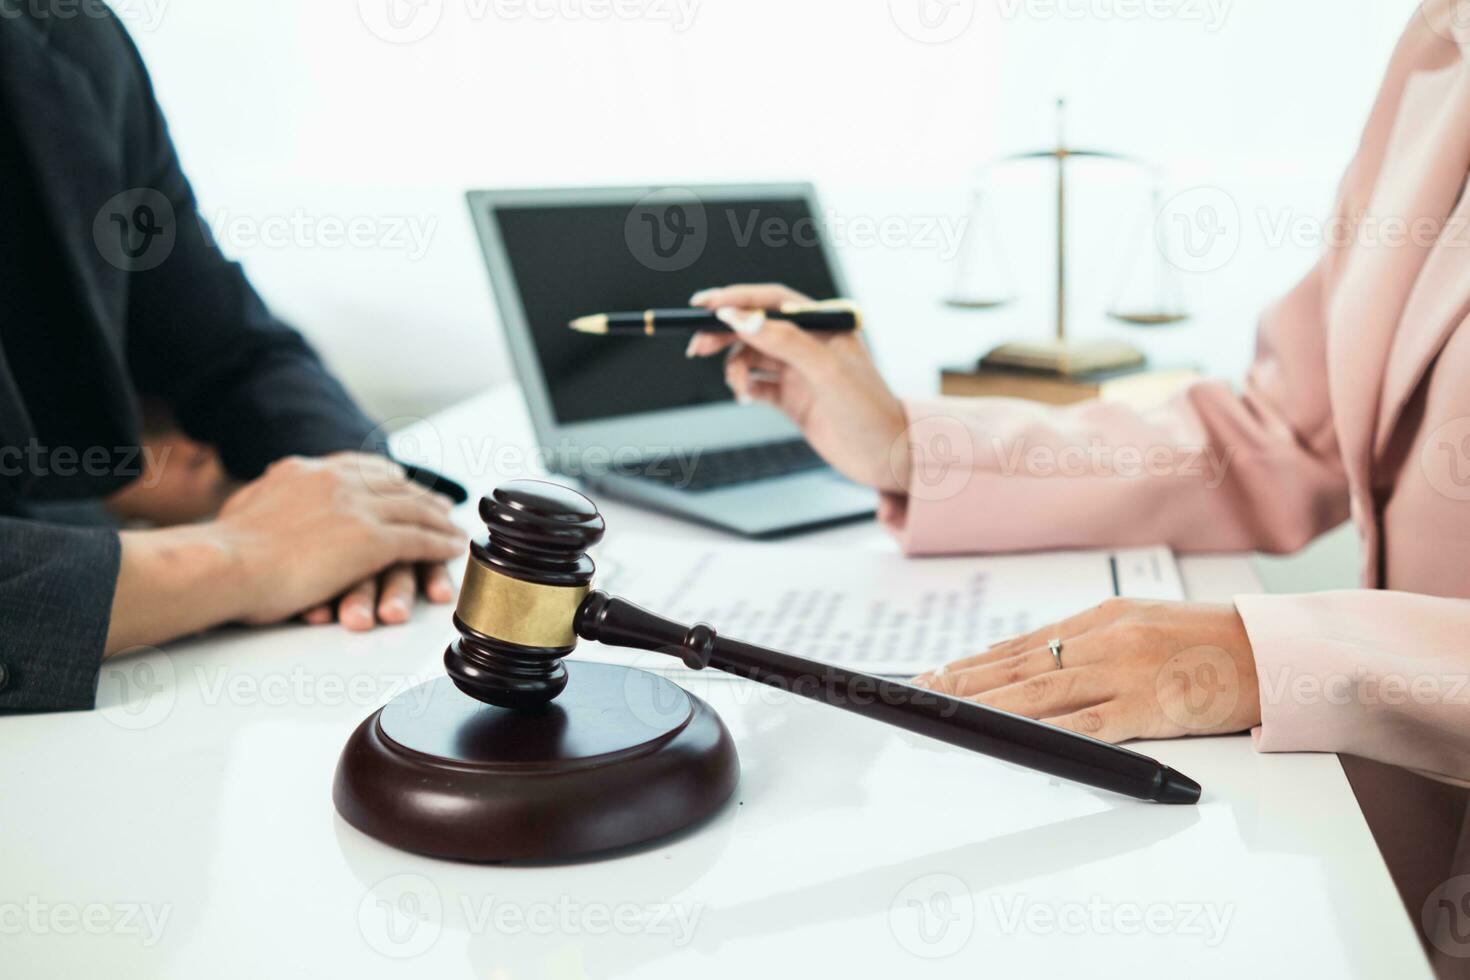 del juez mazo en ley oficina es metido en mesa a simbolizar juez decidiendo demanda judicial. mazo madera en de madera mesa de abogados en legal Consejo oficina como símbolo de justa juicio en casos. foto